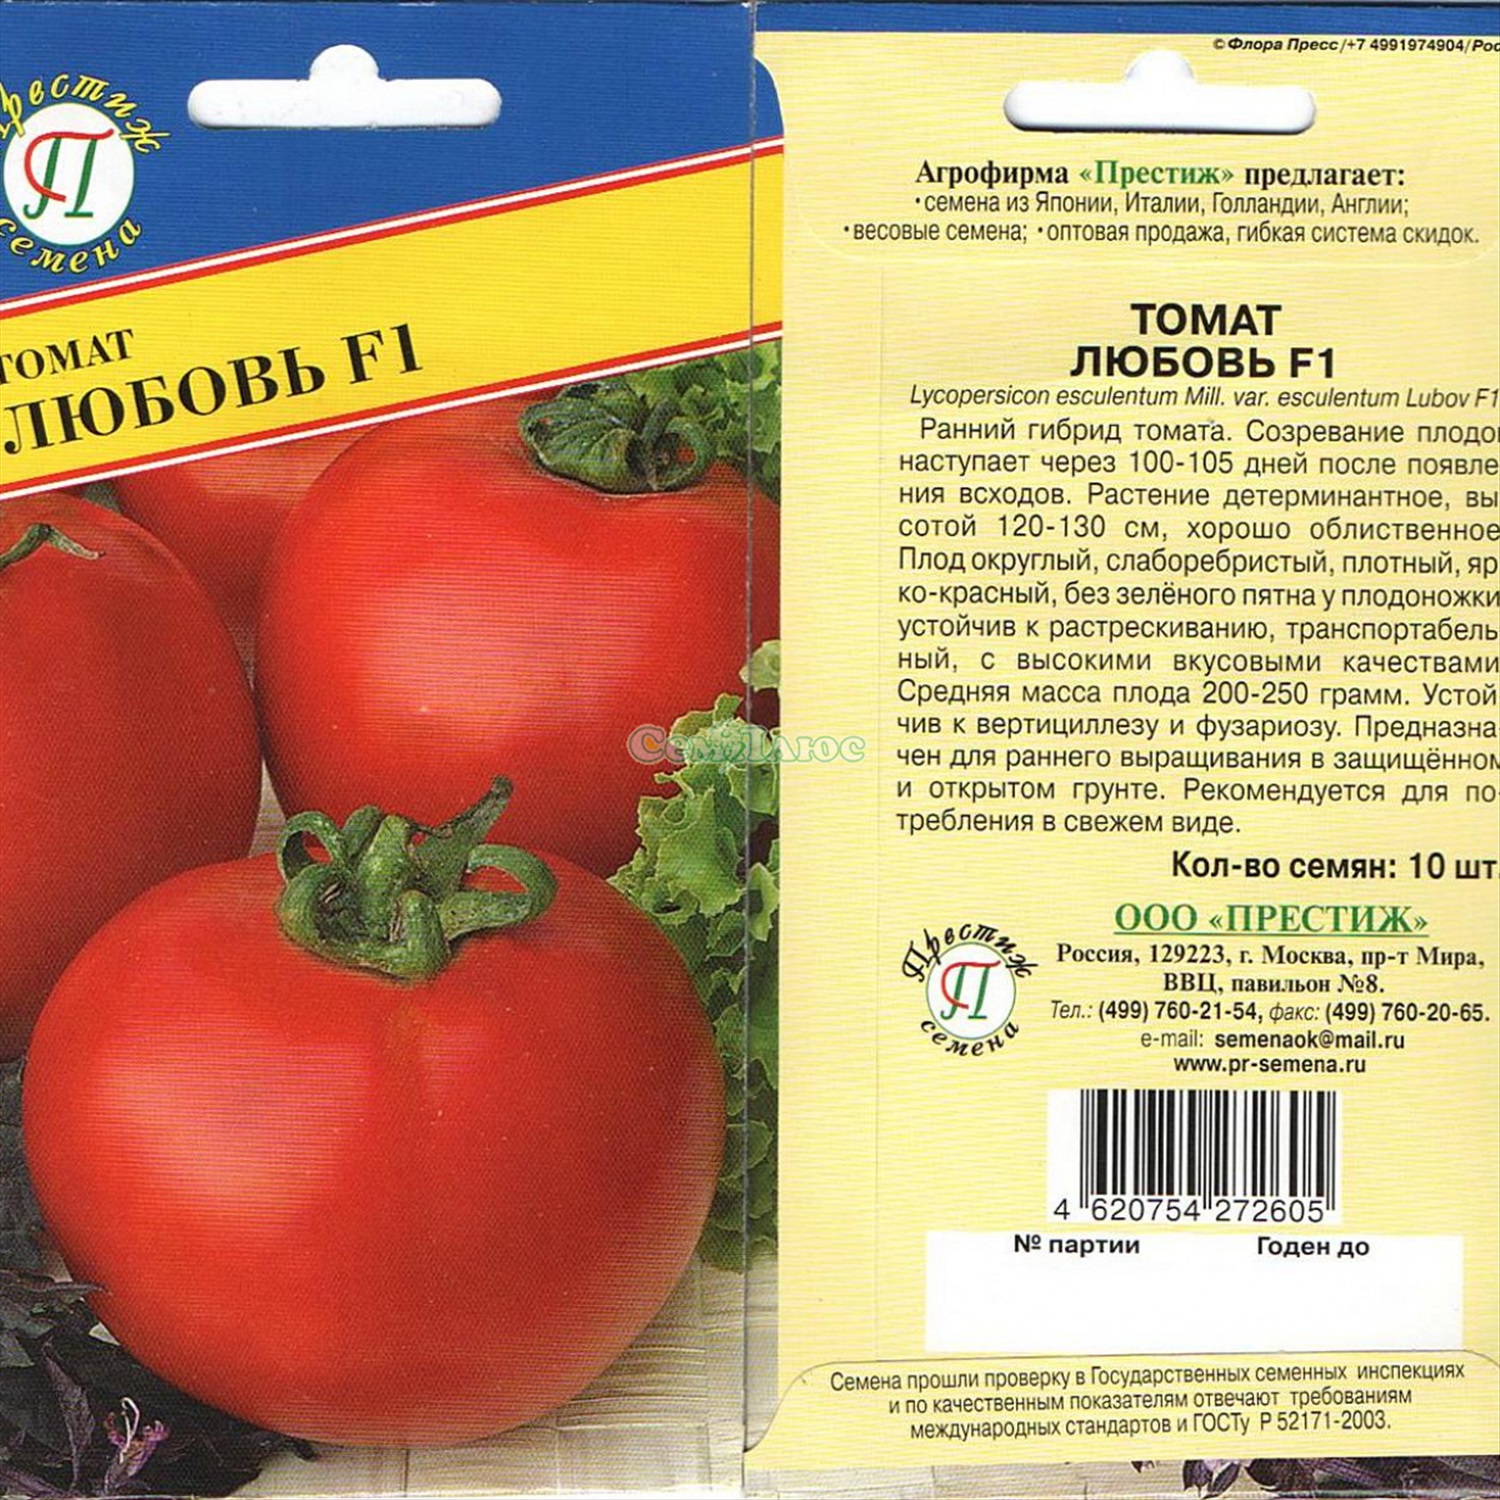 Выбираем лучшие сорта помидоров для огорода по фото и описанию